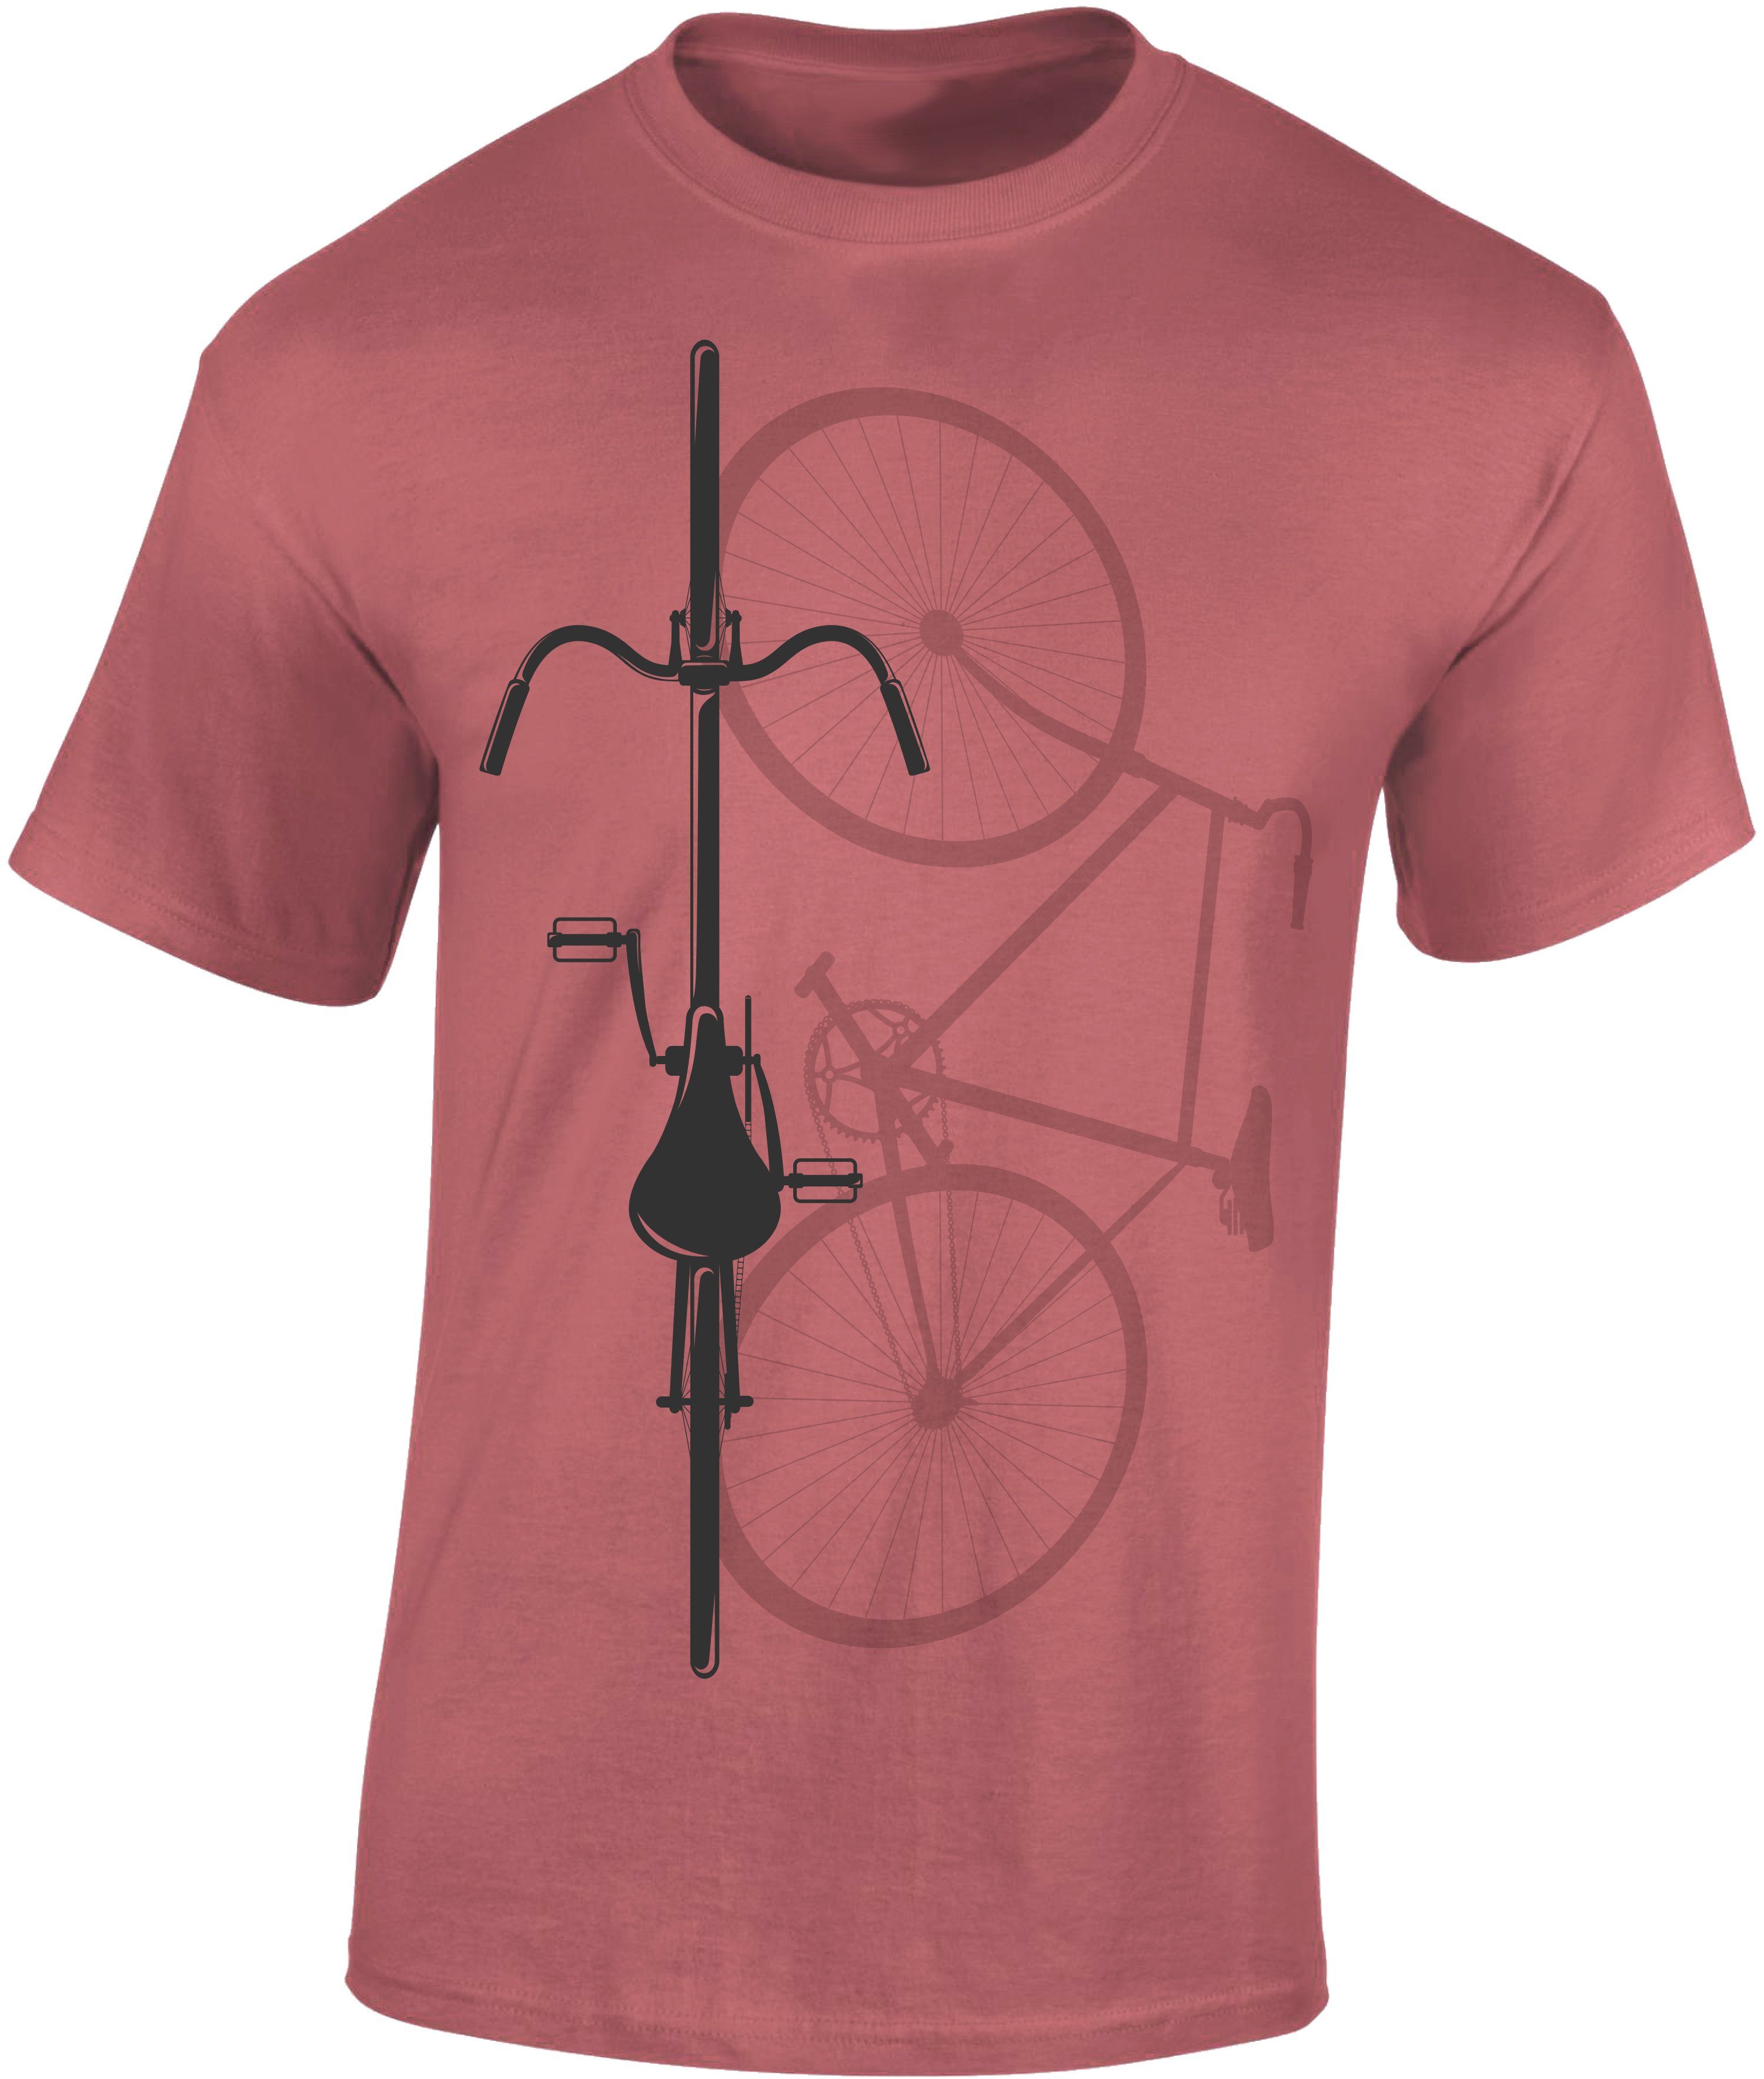 Baddery Print-Shirt Fahrrad T-Shirt : Bike Shadow - Sport Tshirts Herren - Rennrad Zubehör, hochwertiger Siebdruck, auch Übergrößen, aus Baumwolle